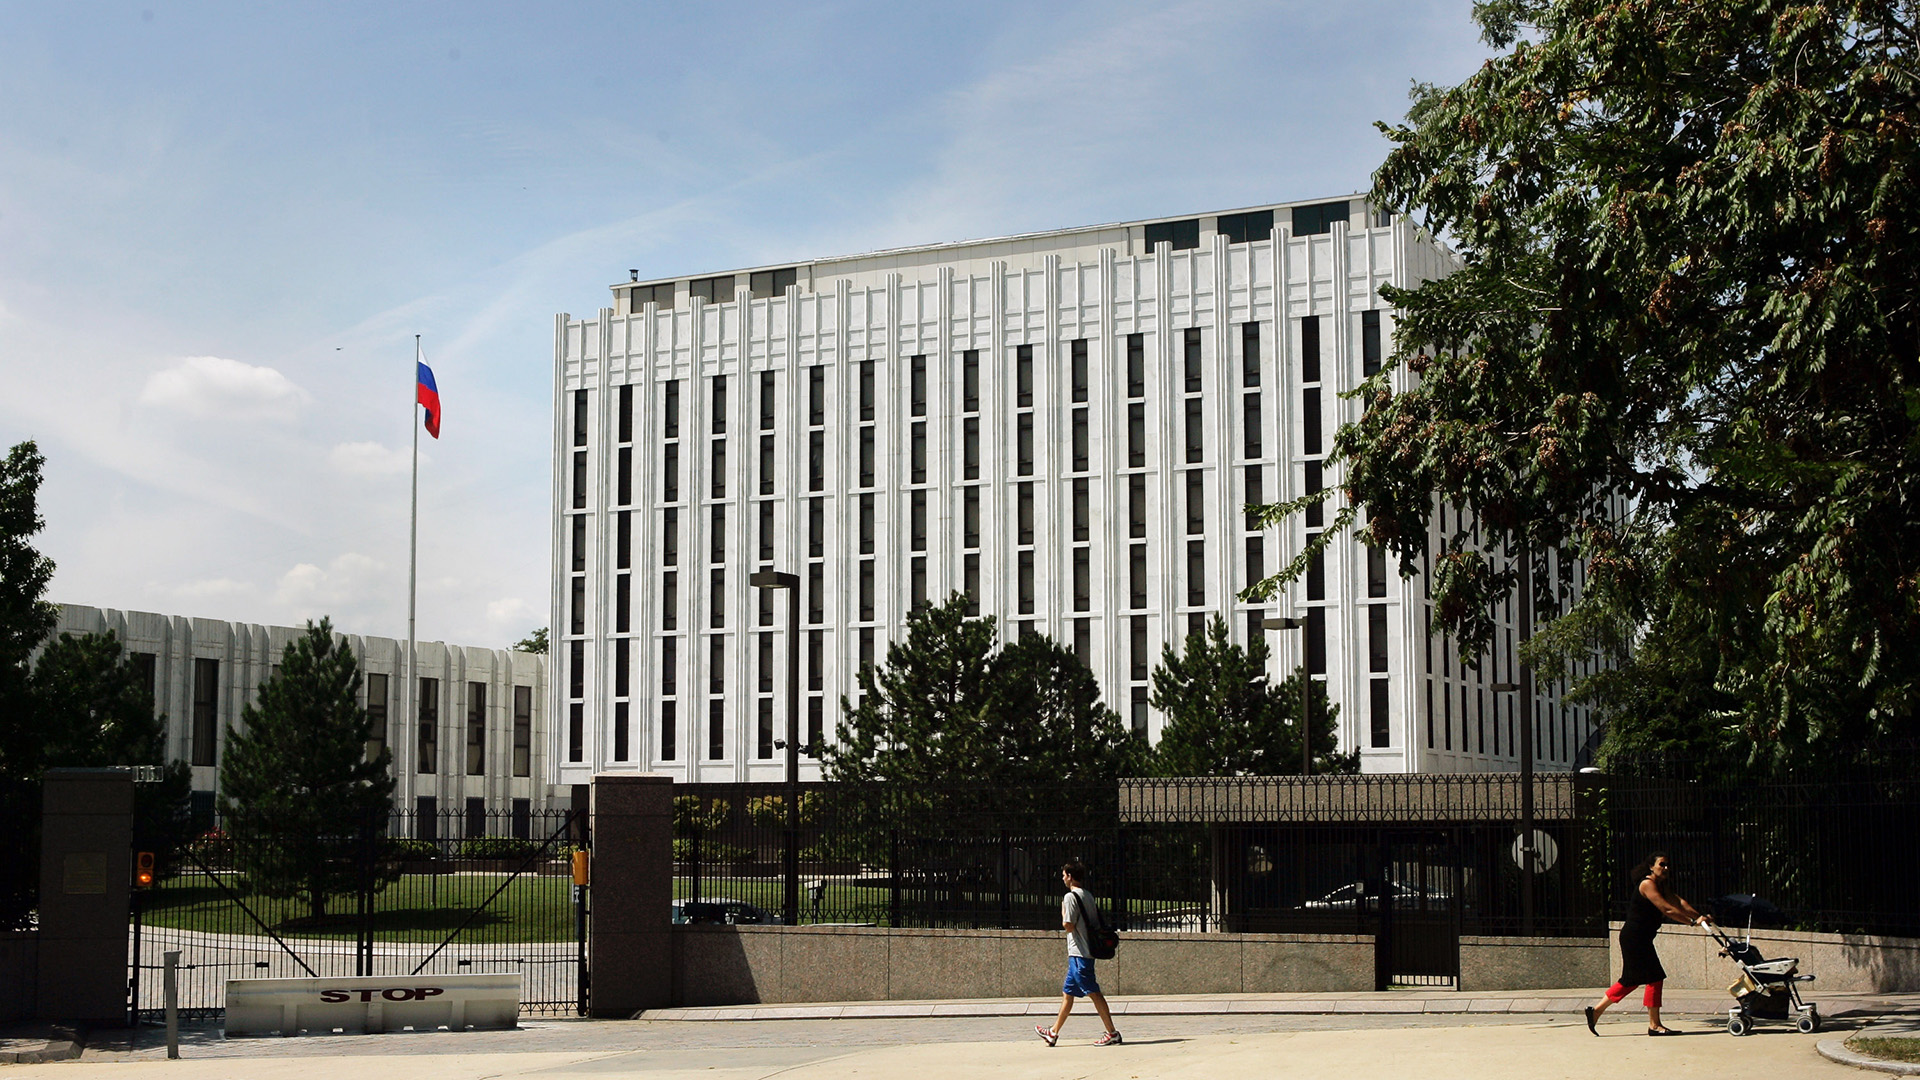 La embajada rusa en Washington. La primera información que negoció Hanssen fue en 1975, cuando todavía era la Unión Soviética (Photo by Brendan Smialowski/Getty Images)